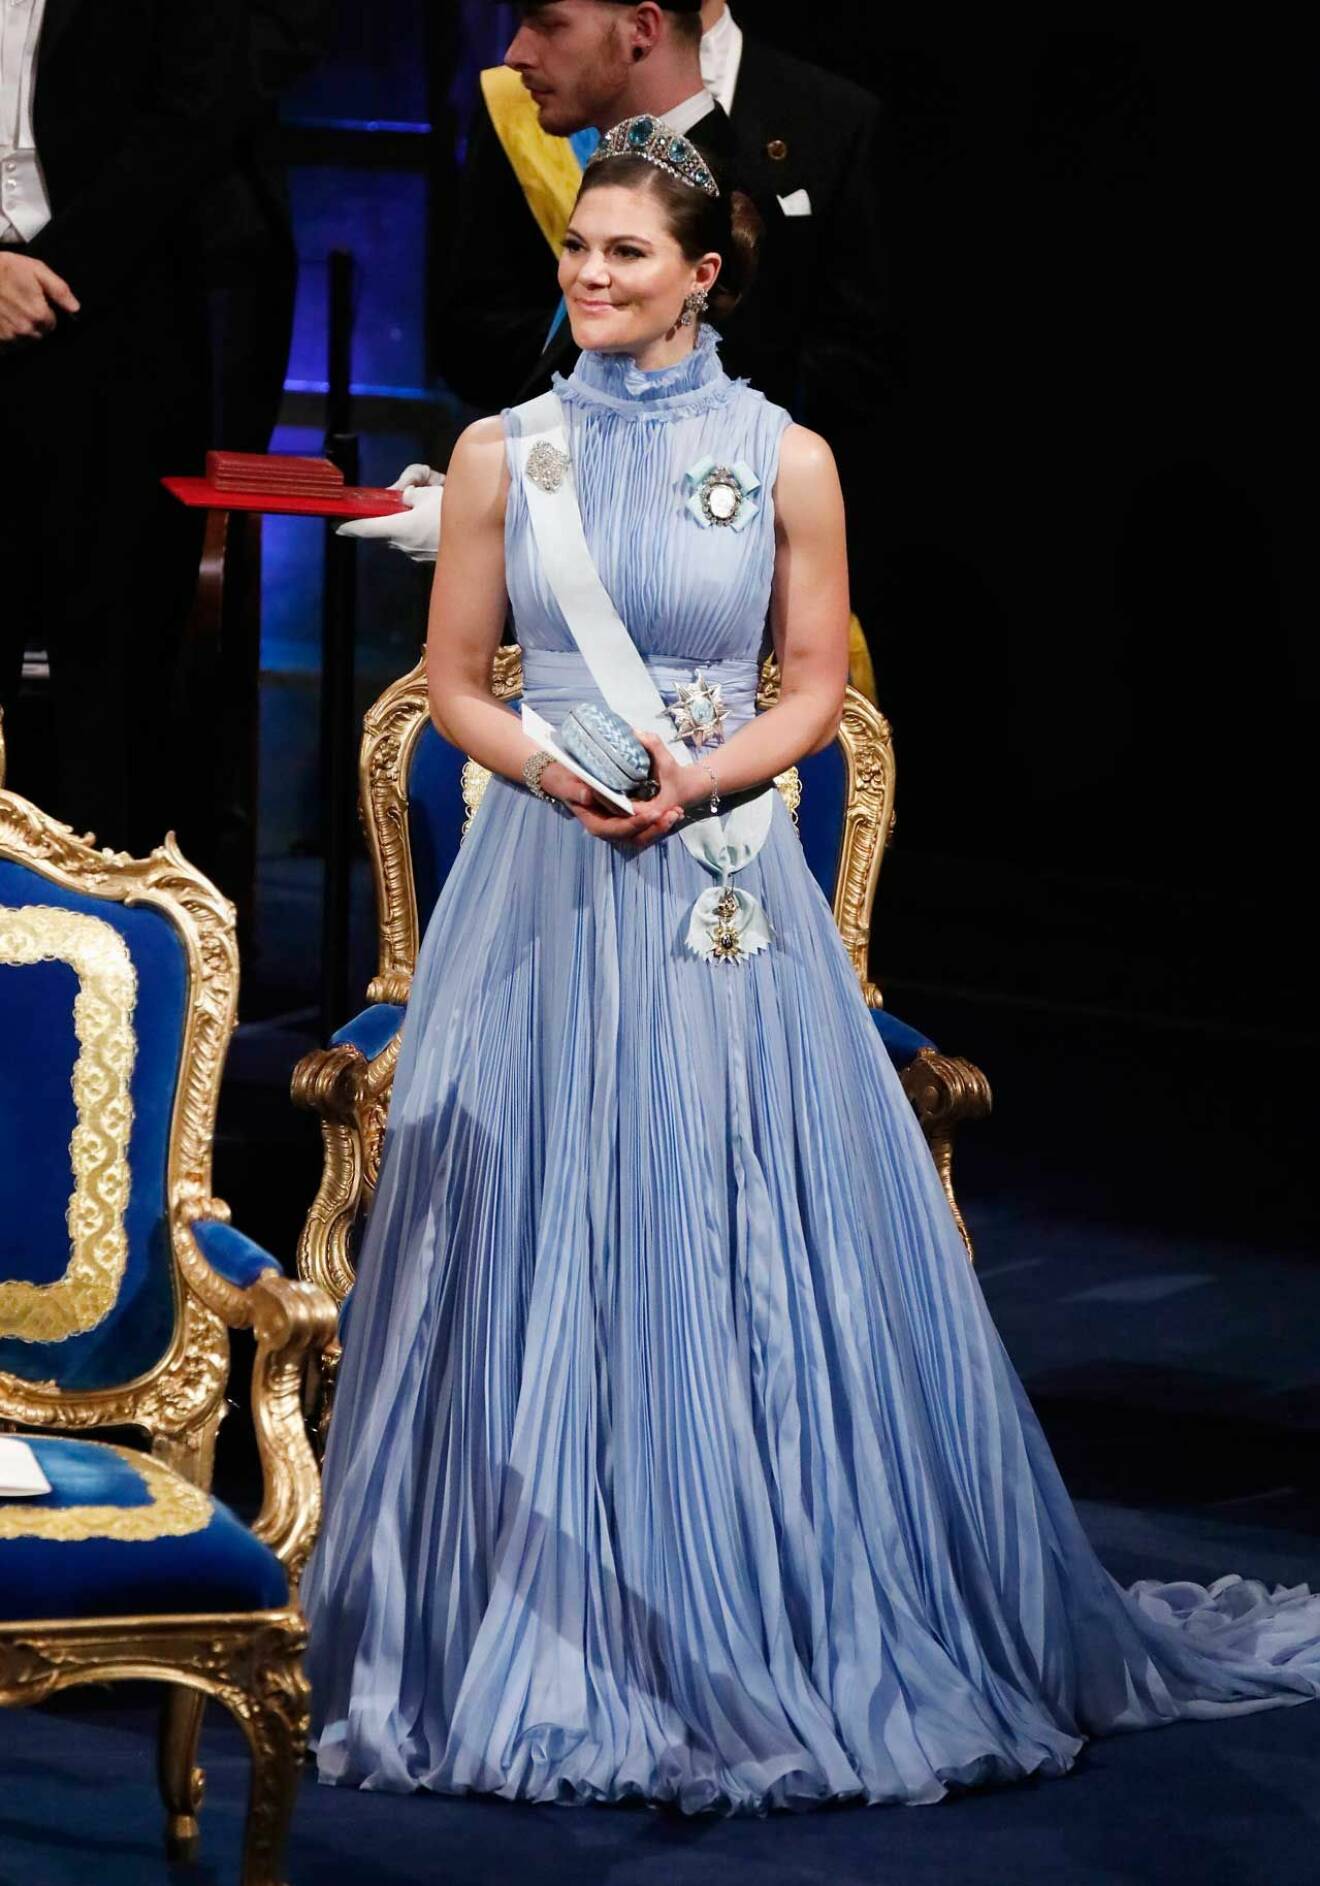 2017 bar kronprinsessan en nobelklänning skapad av Jennifer Blom